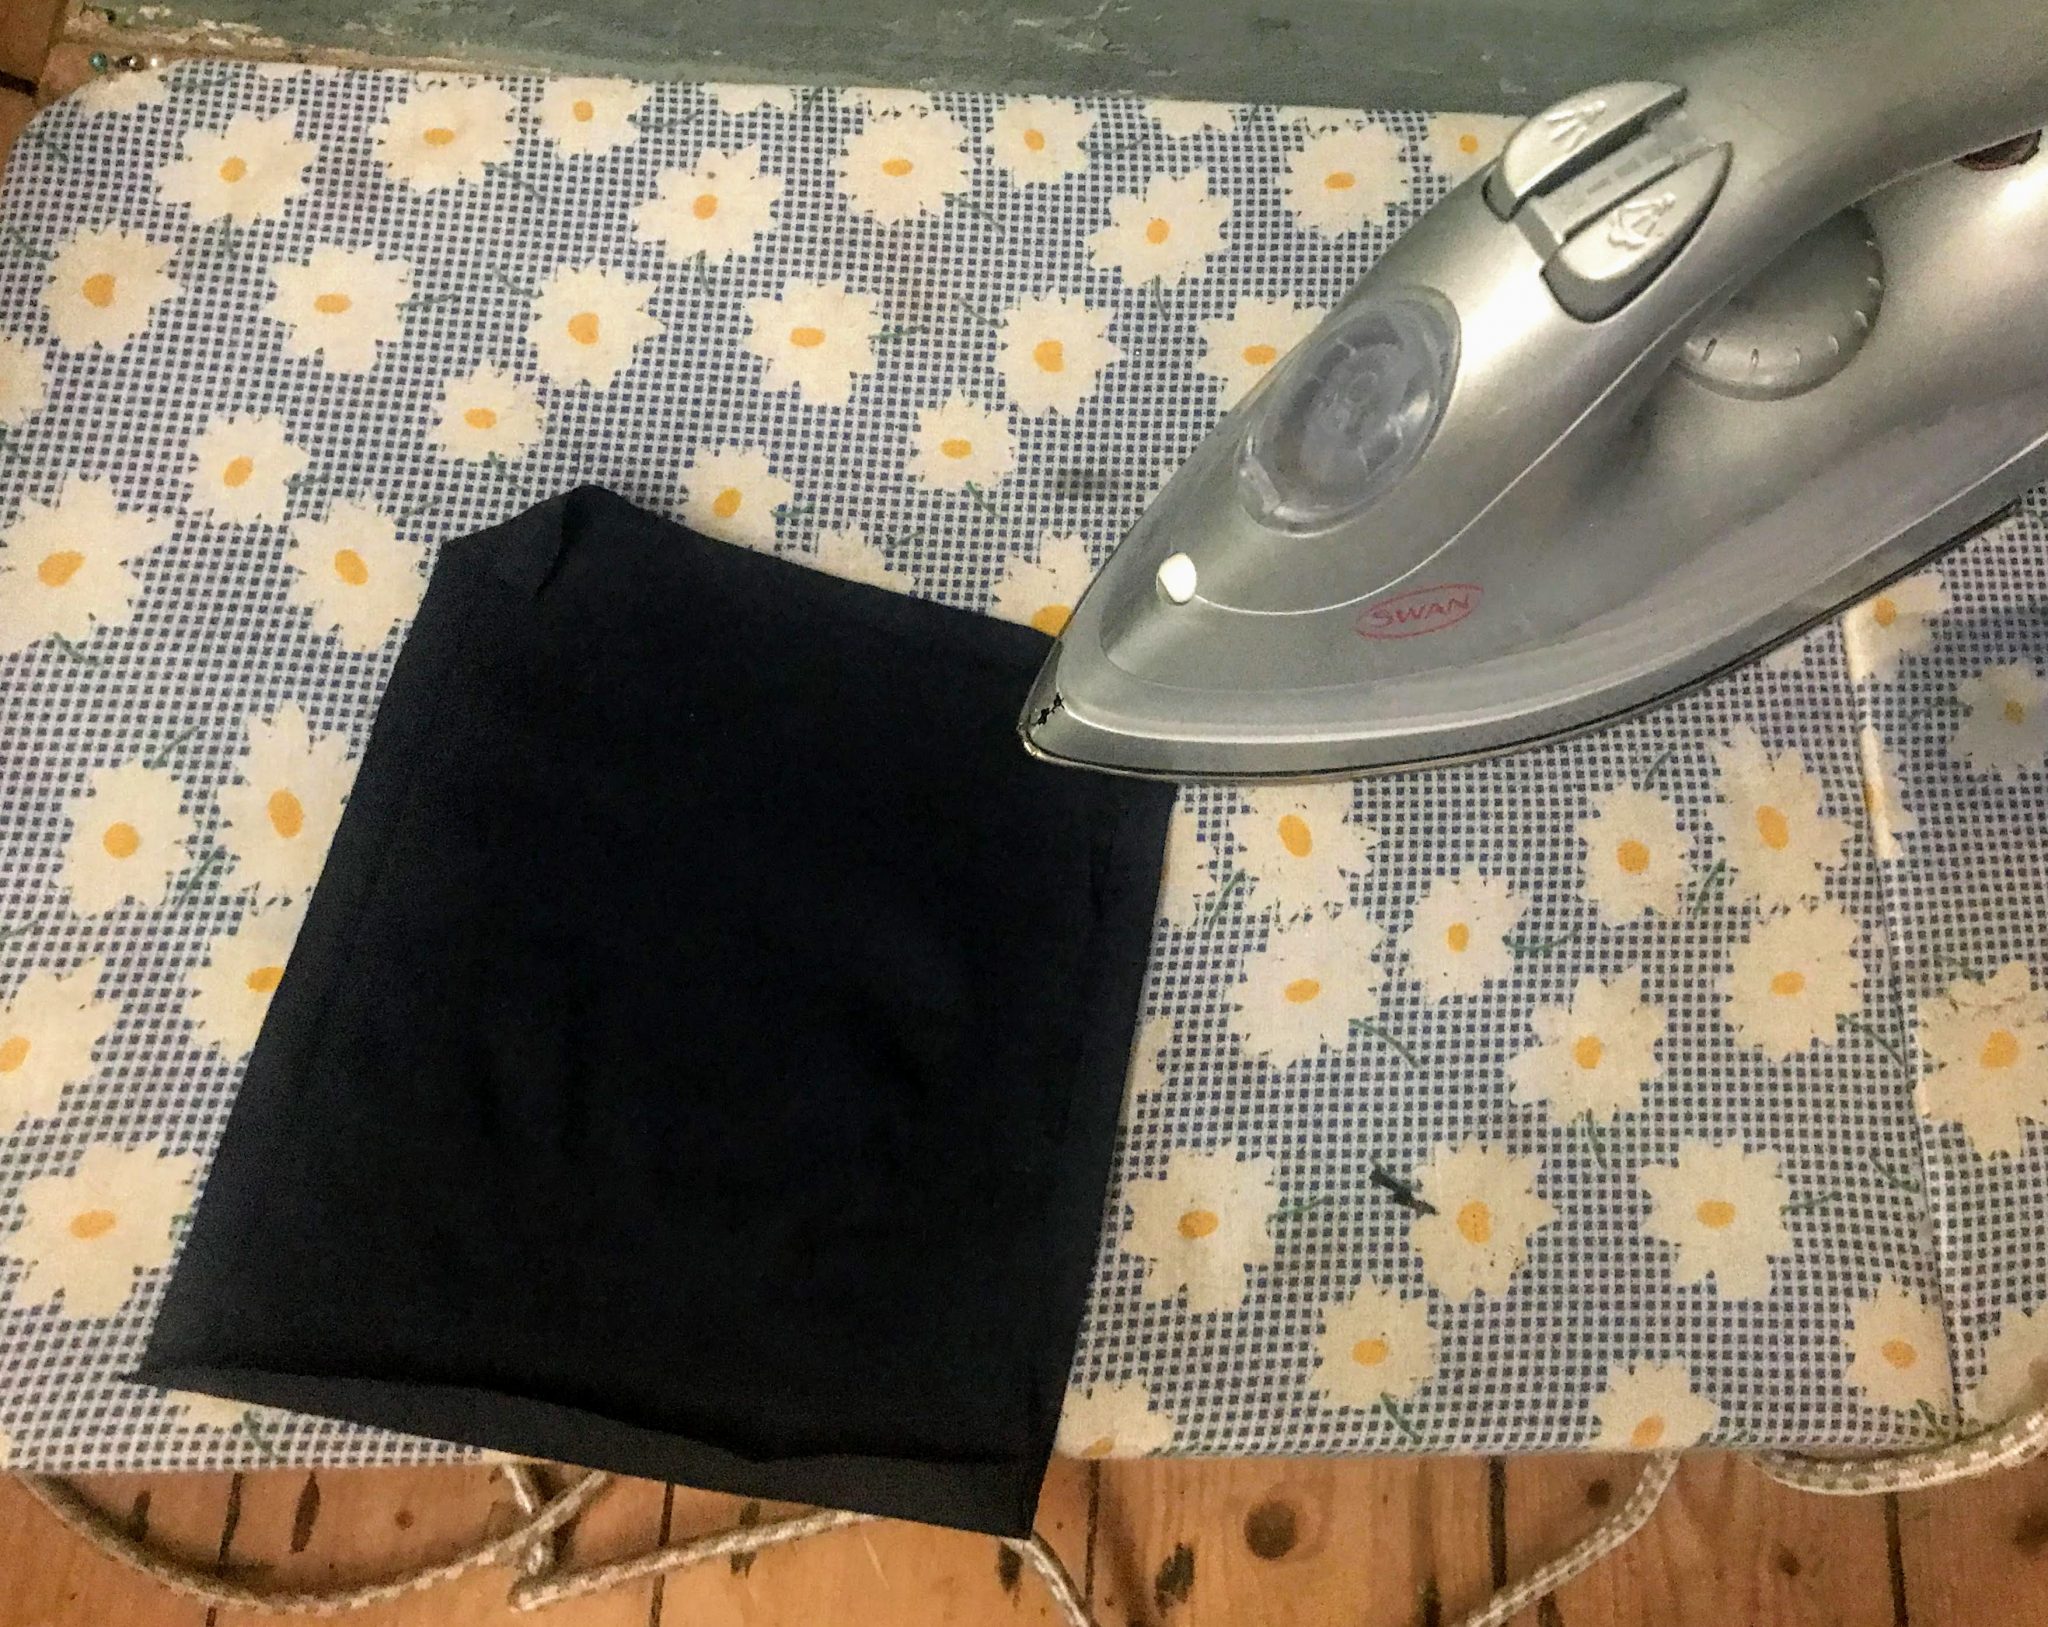 Ironing the pocket